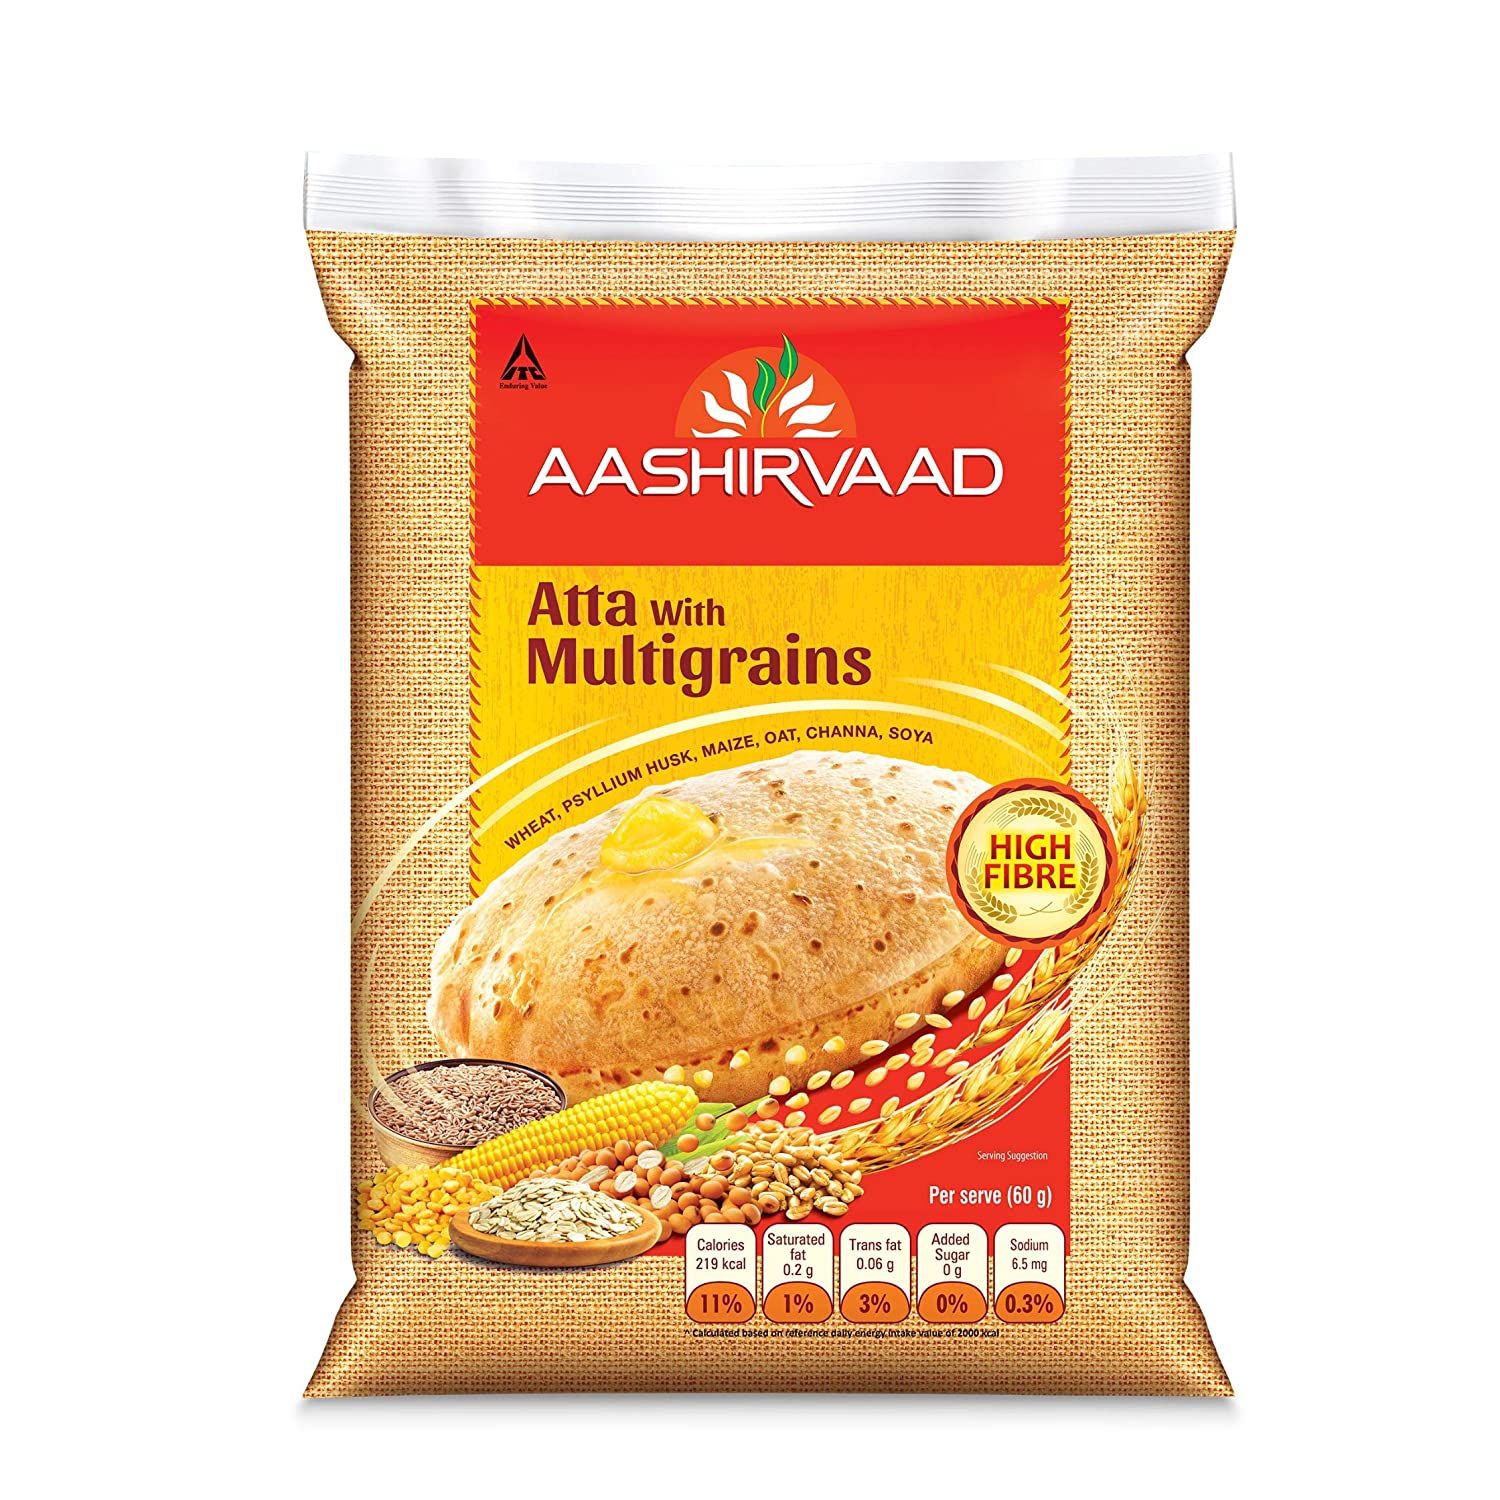 Aashirwad Atta With Multigrains Image